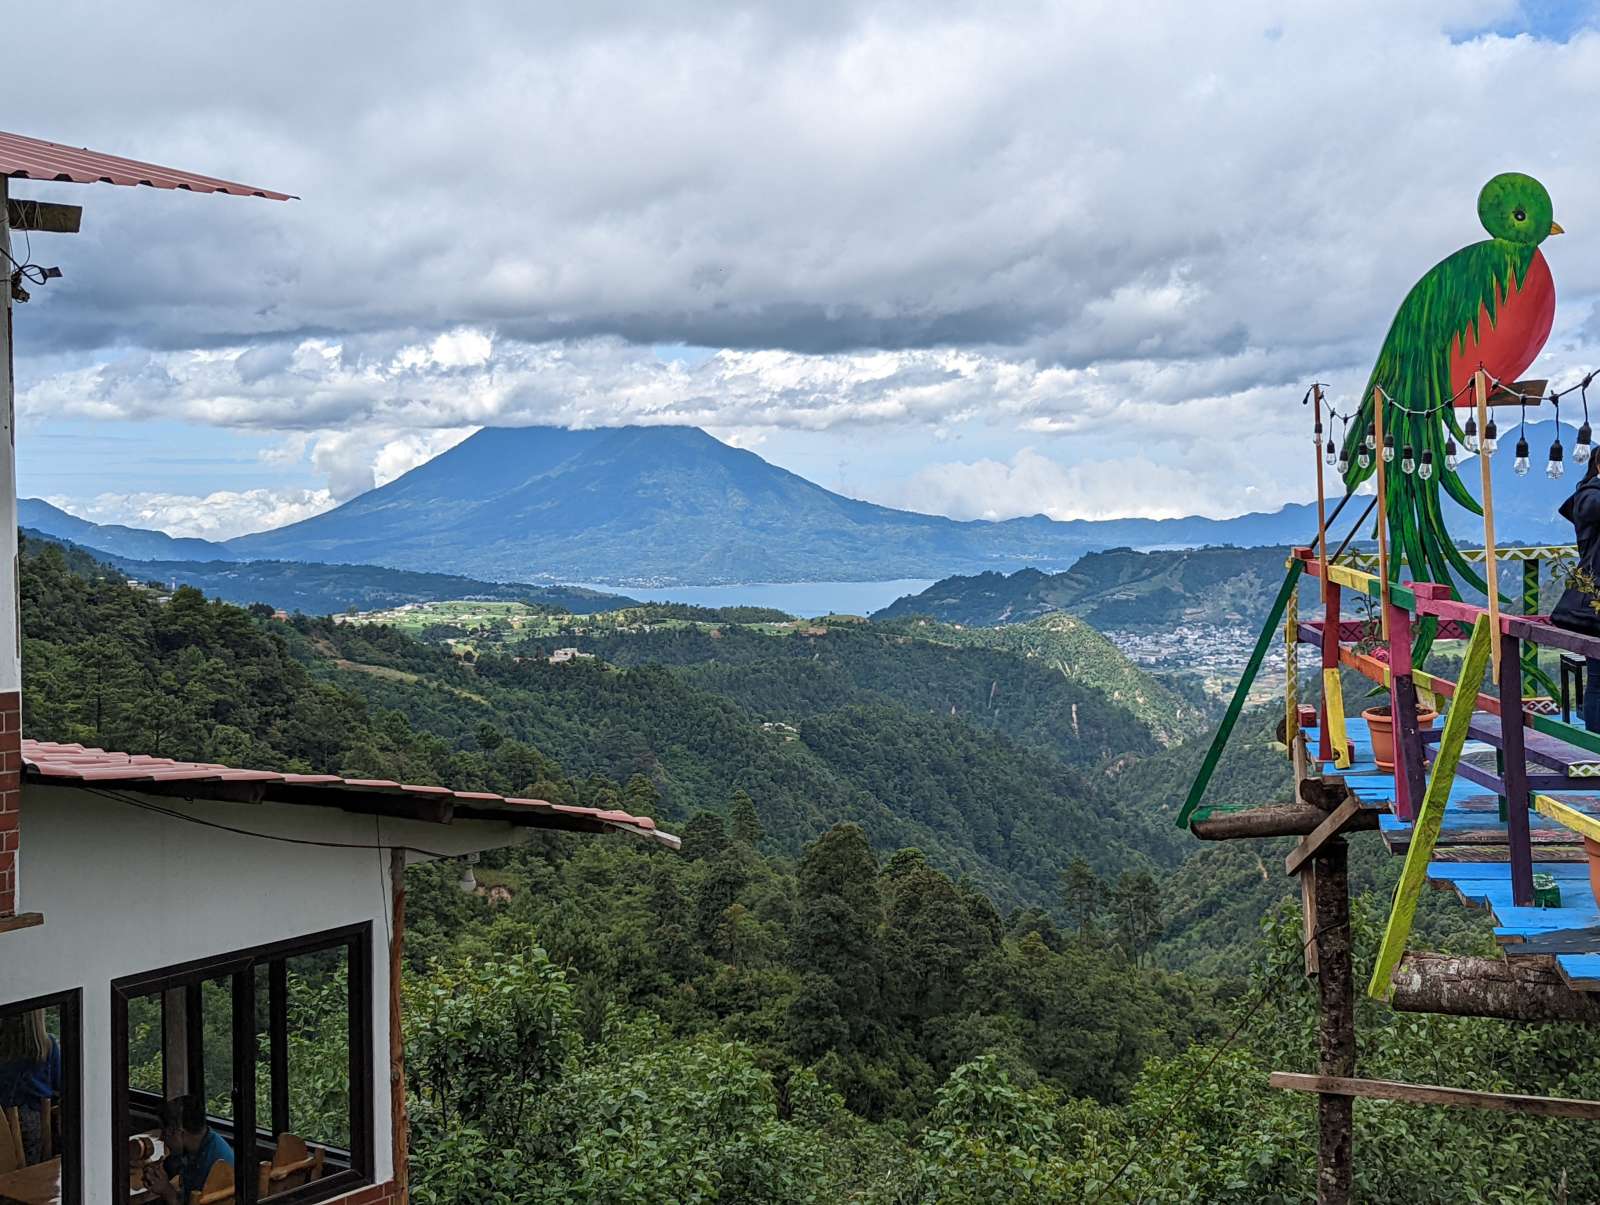 Lake Atitlán and mountain backdrop in Guatemala